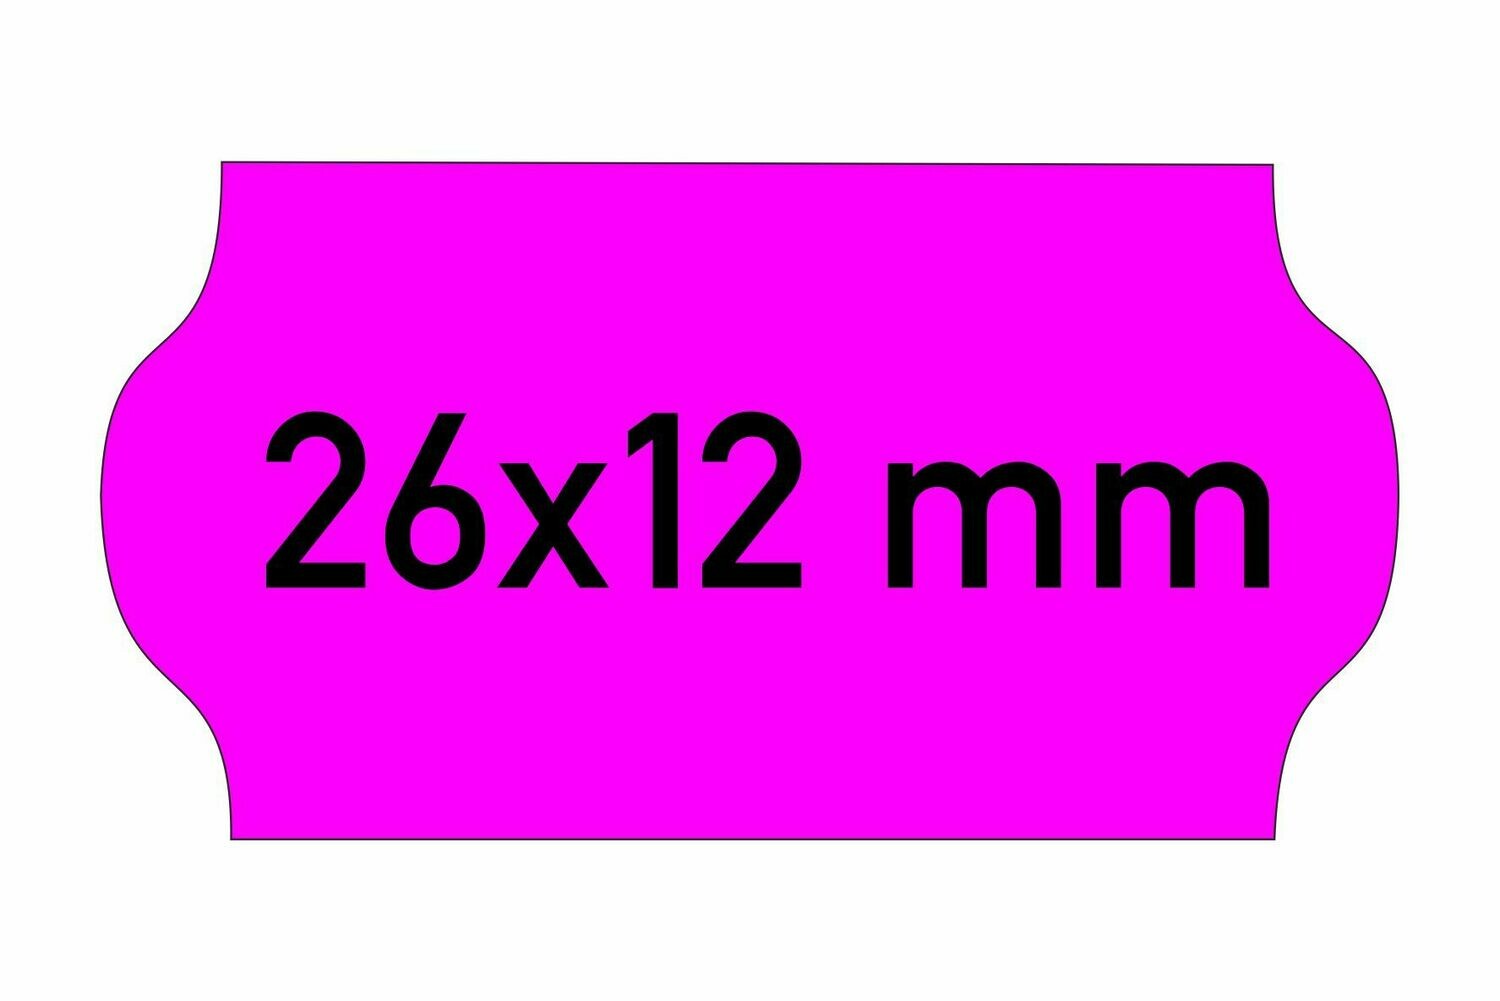 Etiketten 26x12 mm magenta